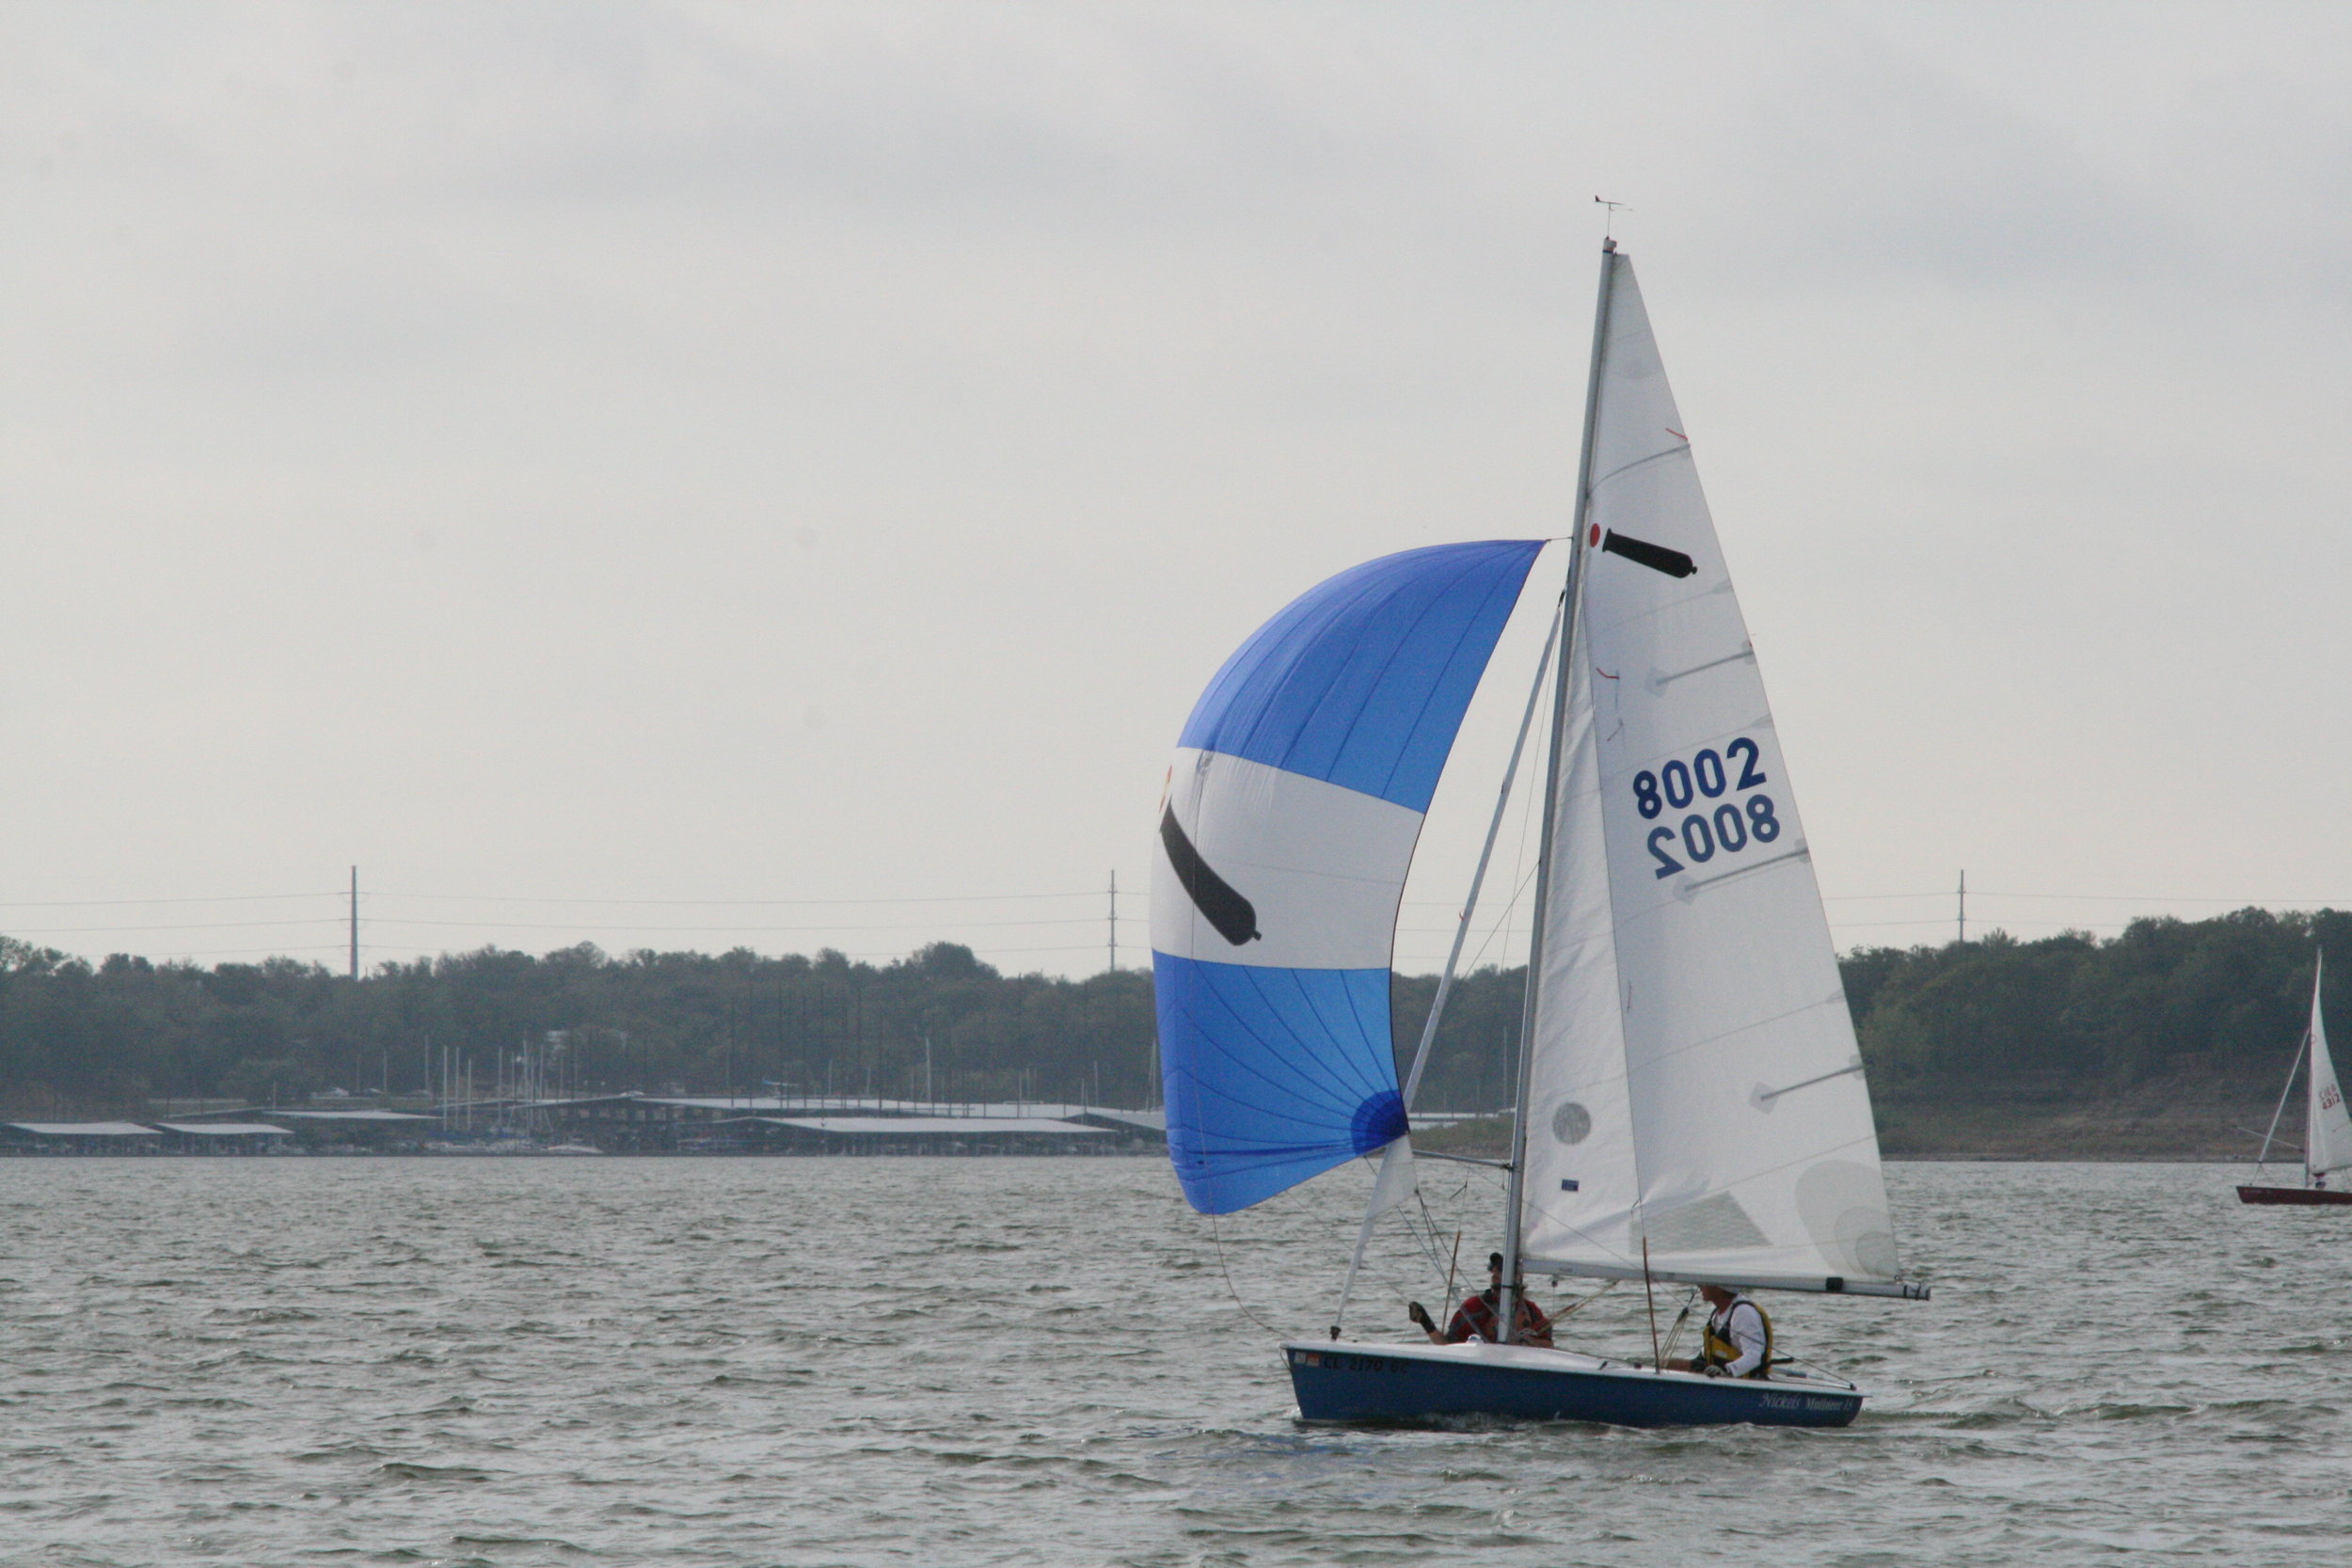 mutineer 15 sailboat review